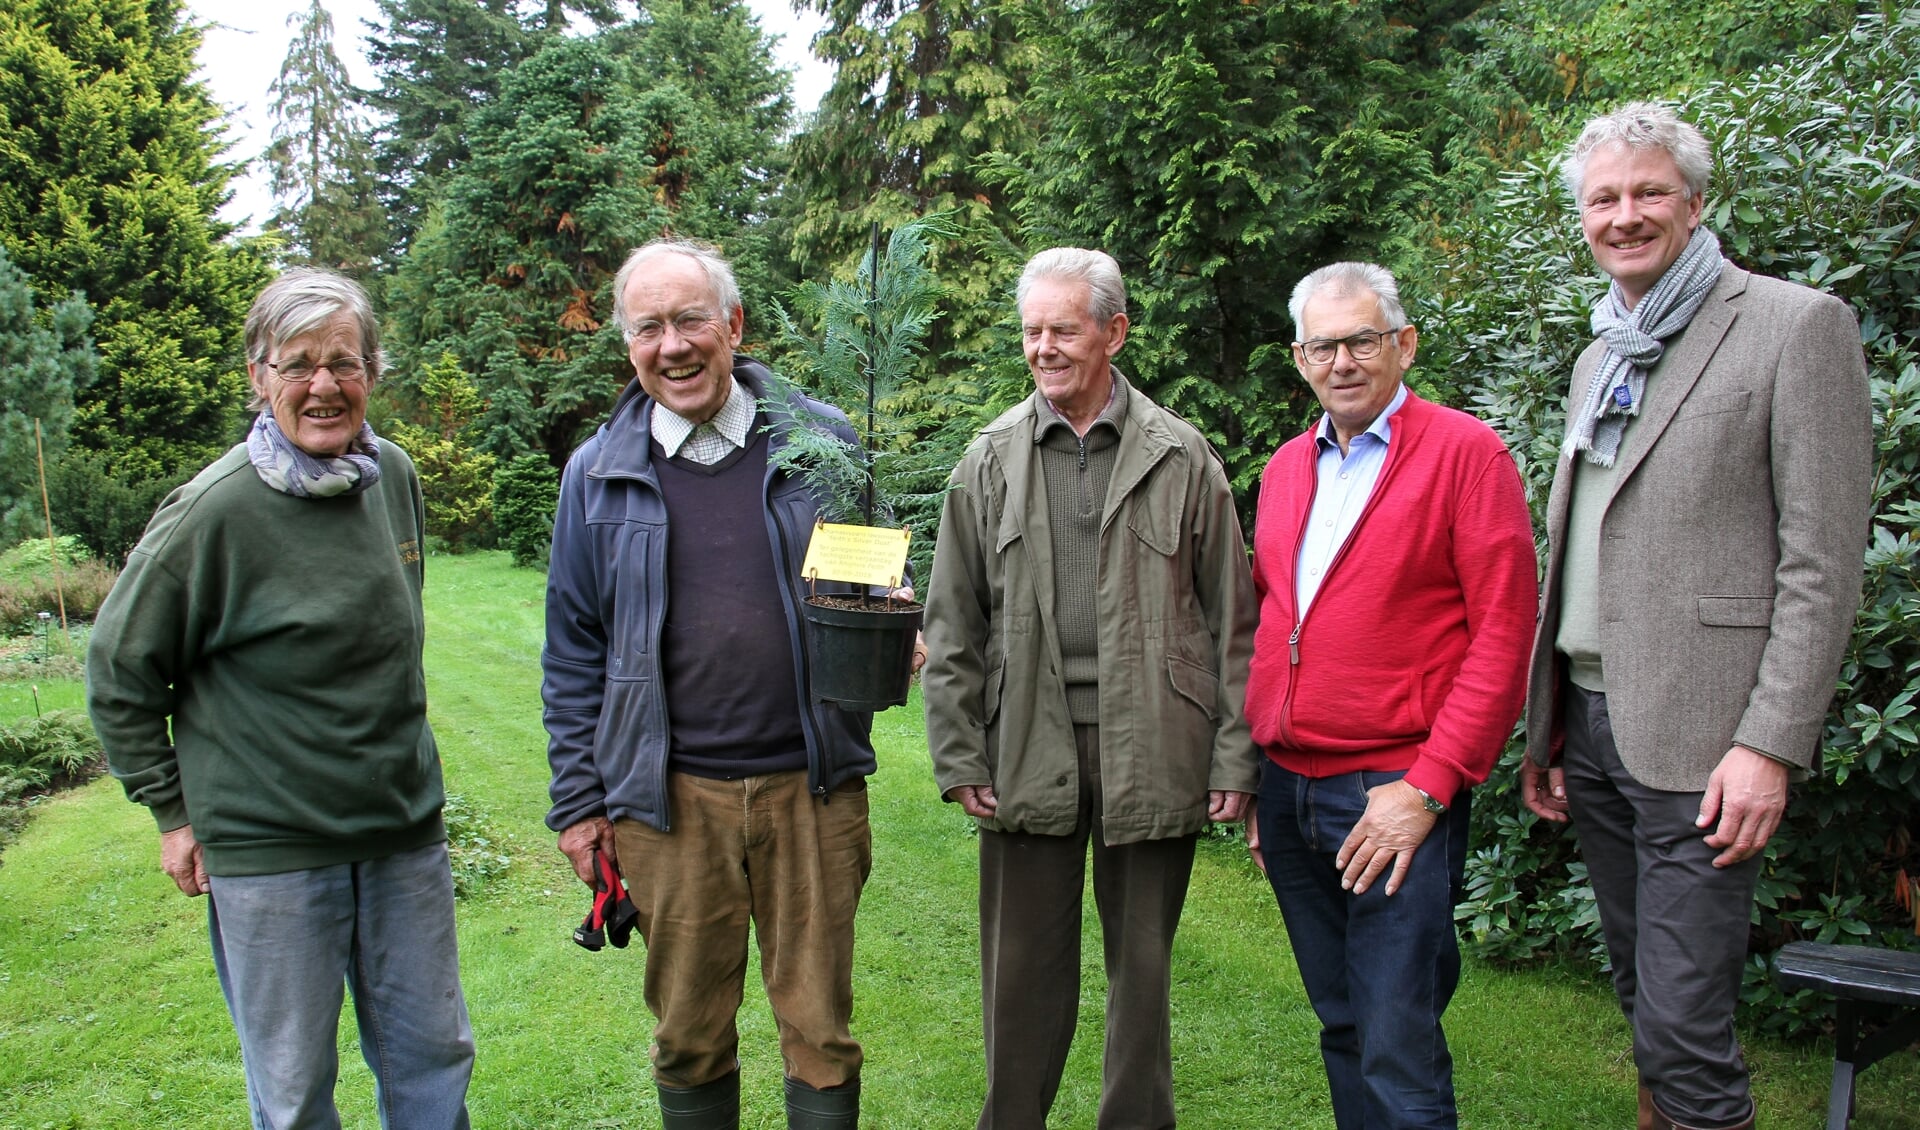 Etty Segers, Rhijnvis Feith met zijn eigen conifeer, Aad van de Kamer, Johan Hengeveld en René Leegte. Foto: Liesbeth Spaansen